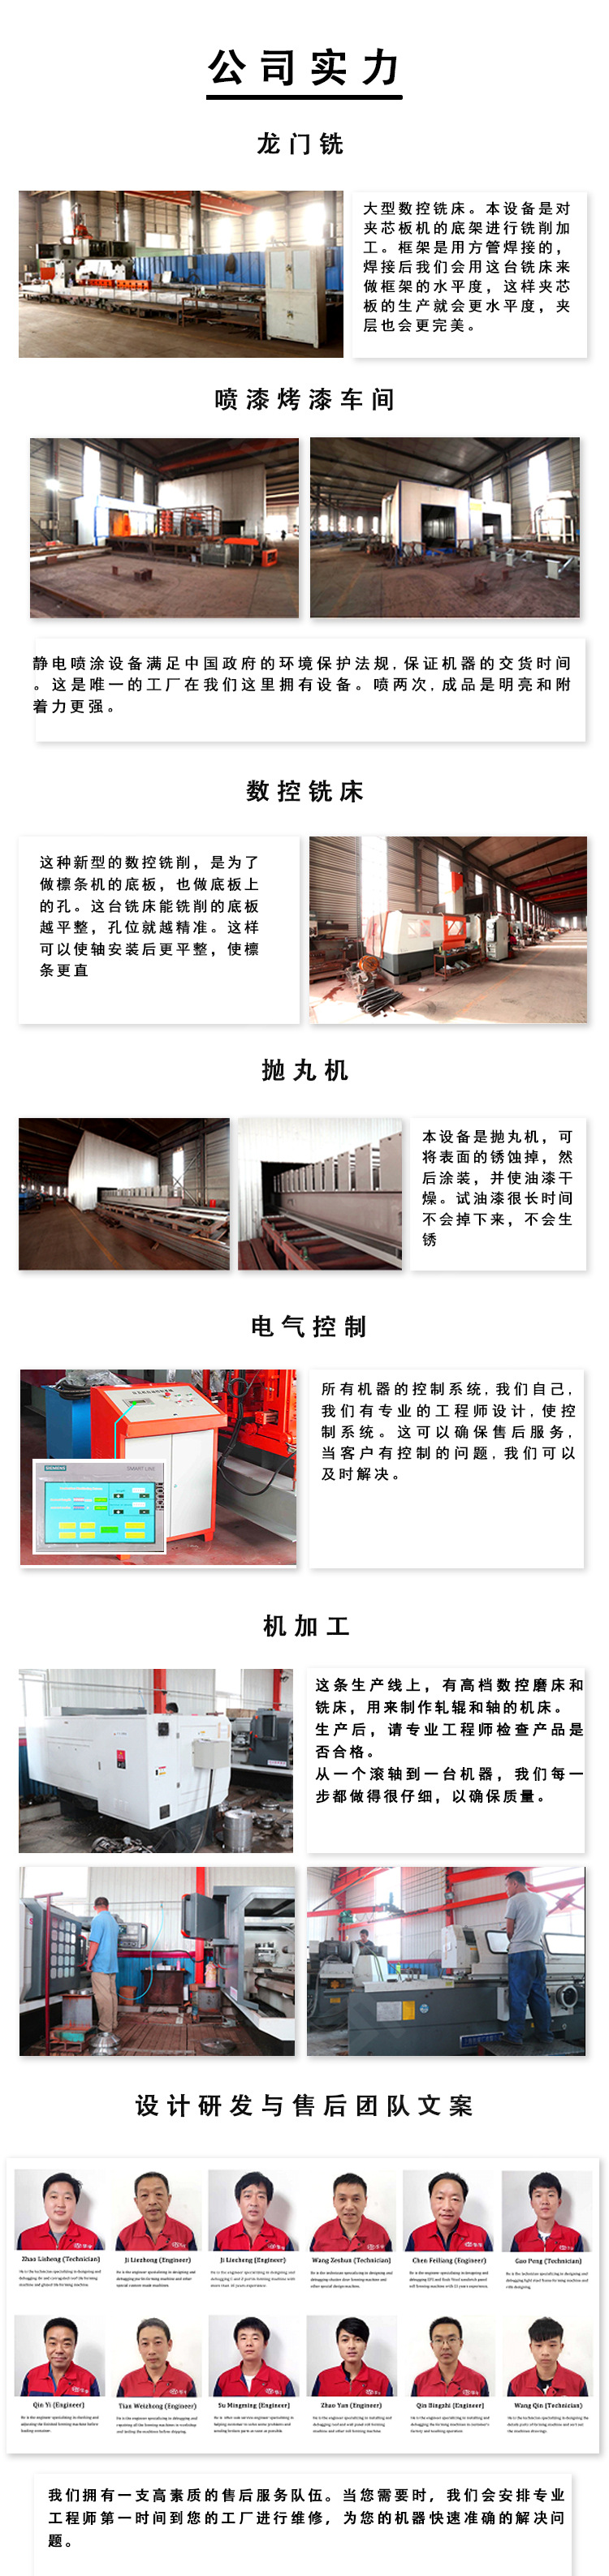 华宇出口偏圆弧伺服电机琉璃瓦 屋面板材建材成型设备示例图1